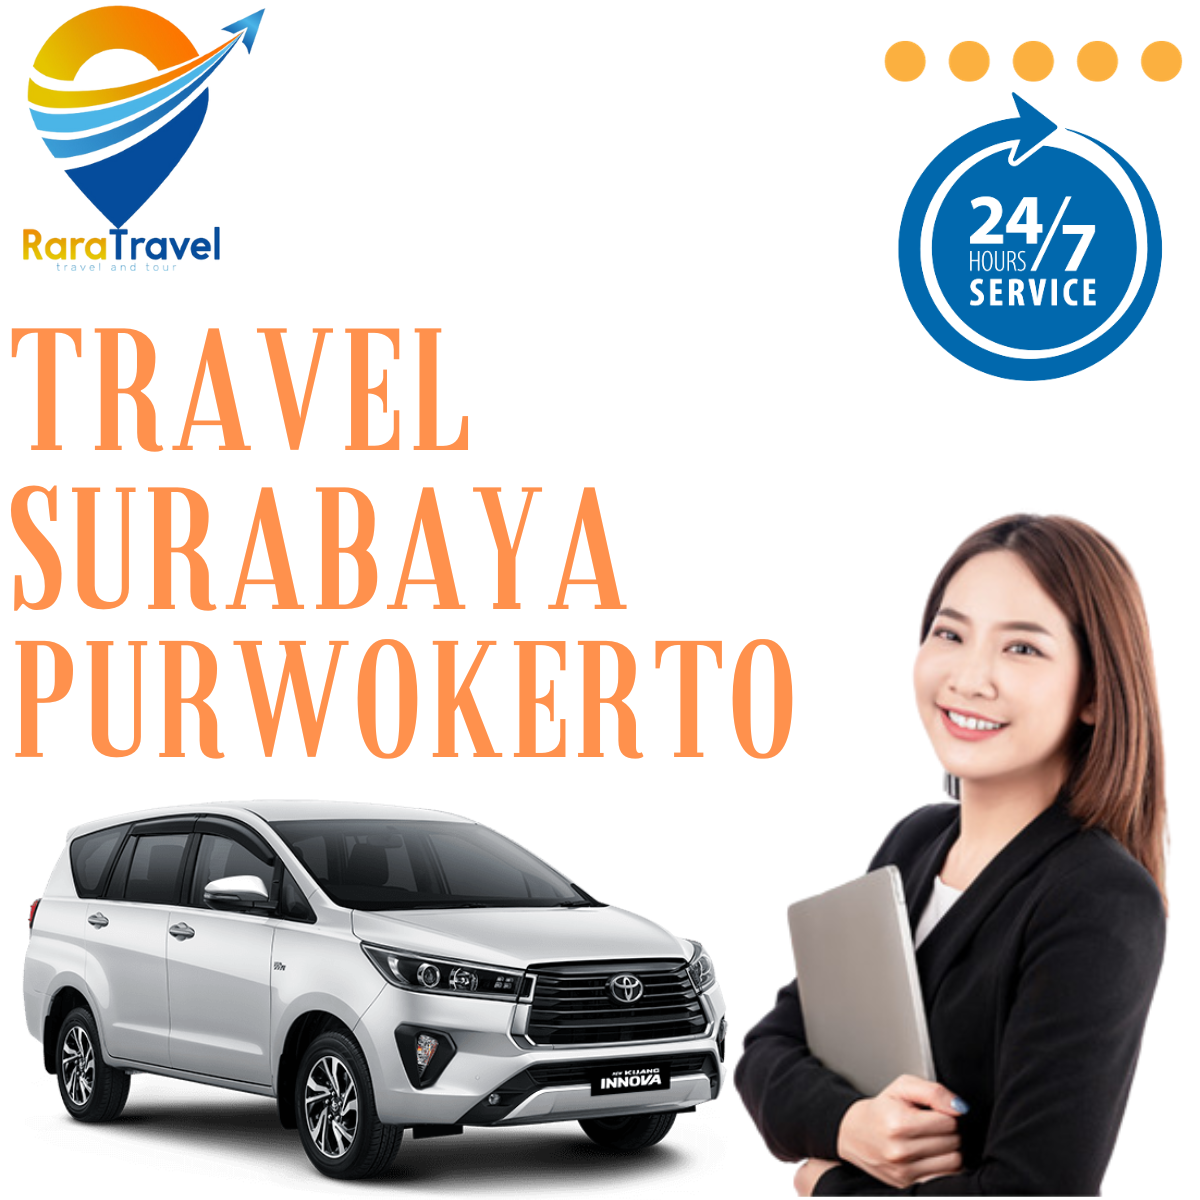 Travel Surabaya Purwokerto PP Hiace Via Toll Murah Mulai Rp 200K, Jadwal, Fasilitas dan Layanan 24 Jam